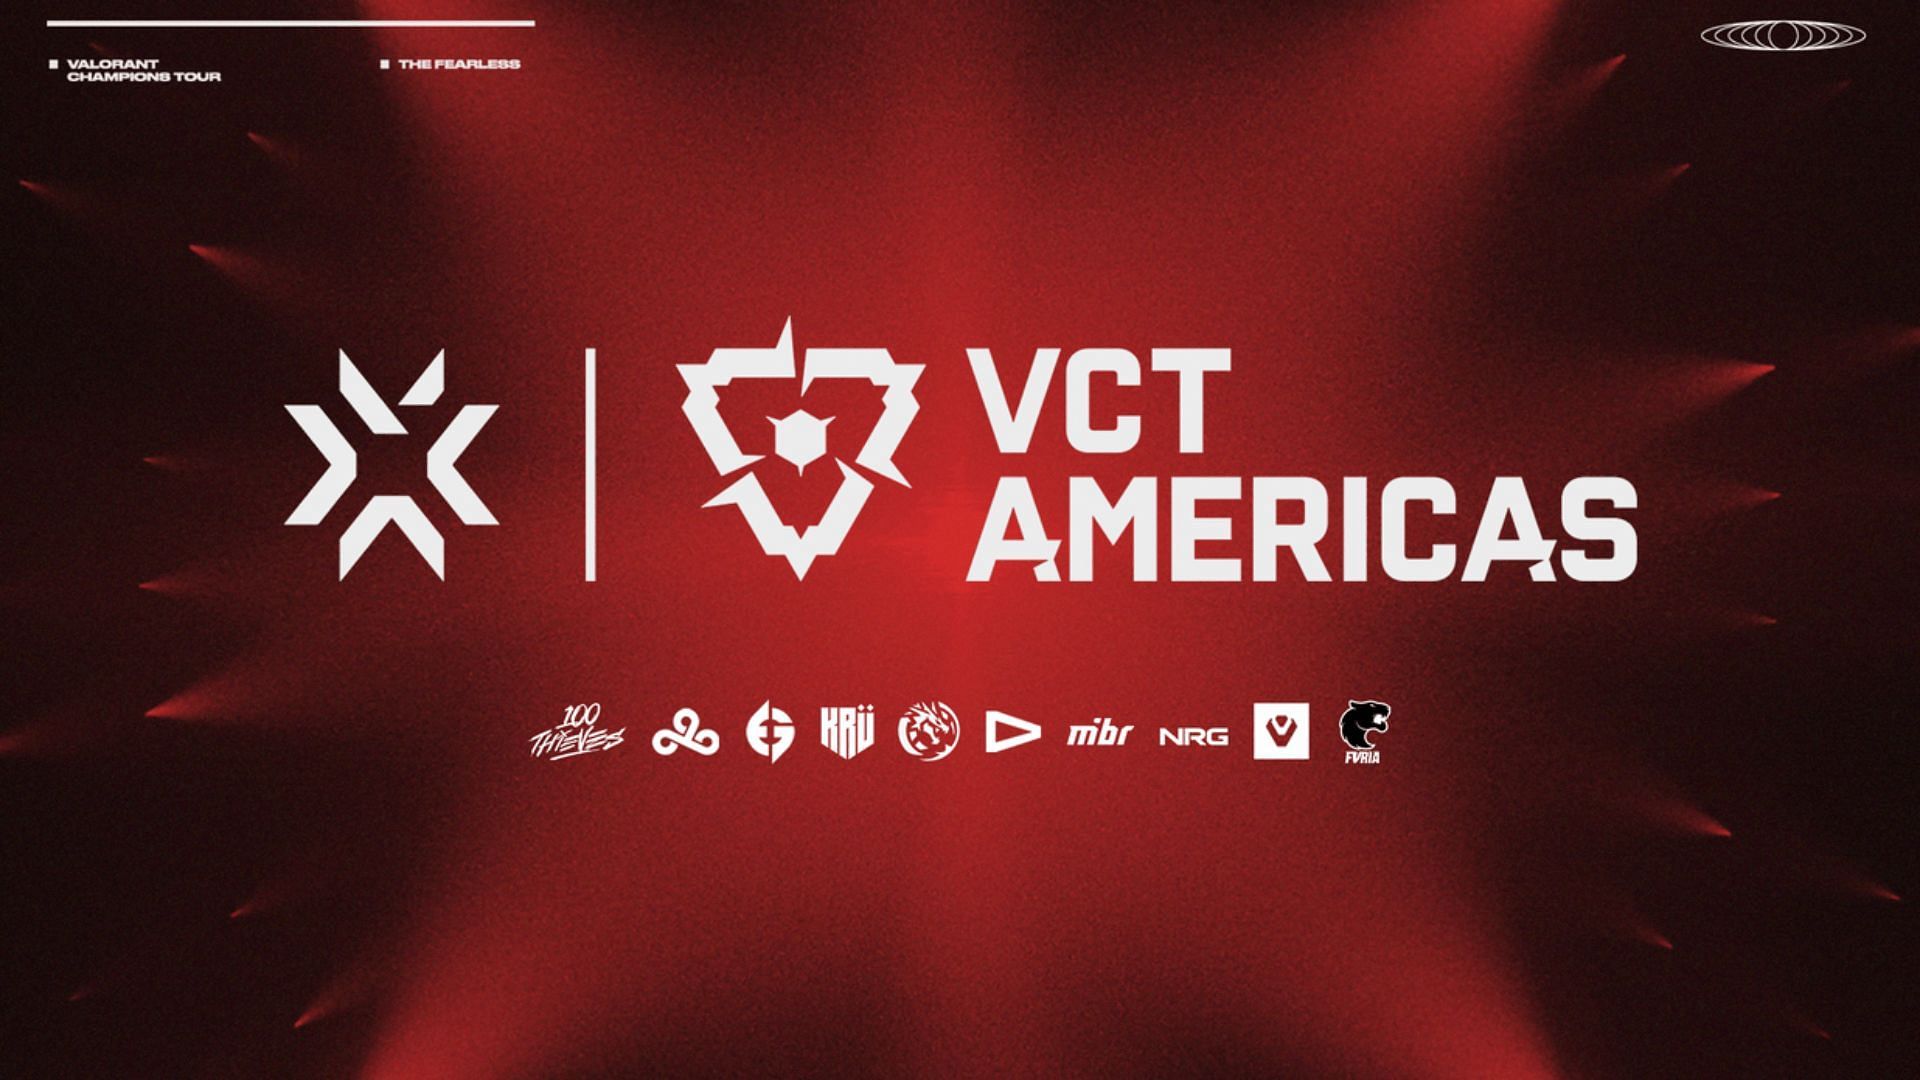 VCT Americas League schedule (Image via Riot Games)